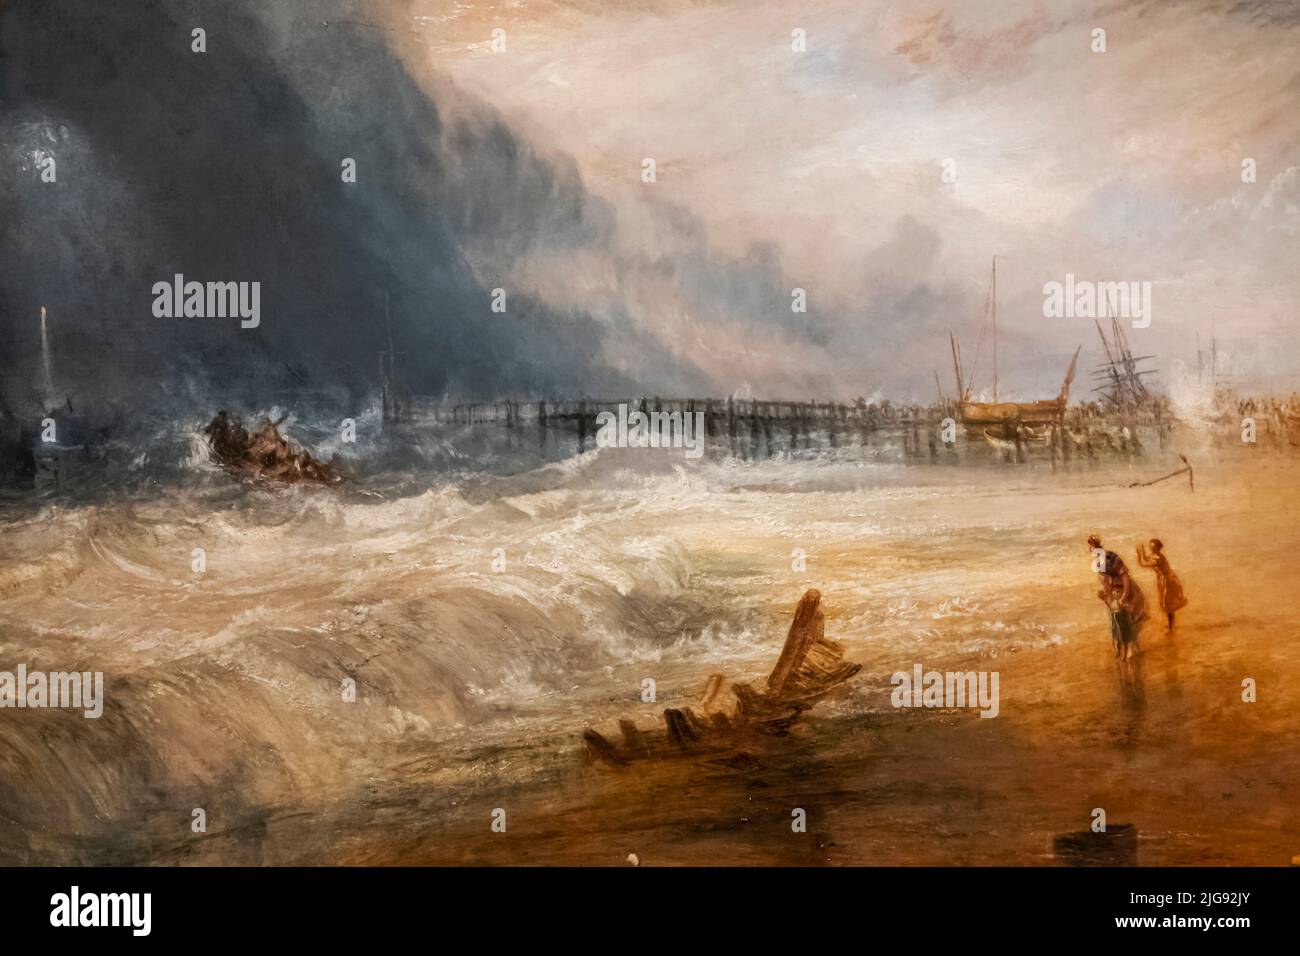 England, London, Knightsbridge, Victoria and Albert Museum, Gemälde von Turner aus dem Jahr 1831, in dem ein Rettungsboot zu einem Stranded Vessel fährt Stockfoto